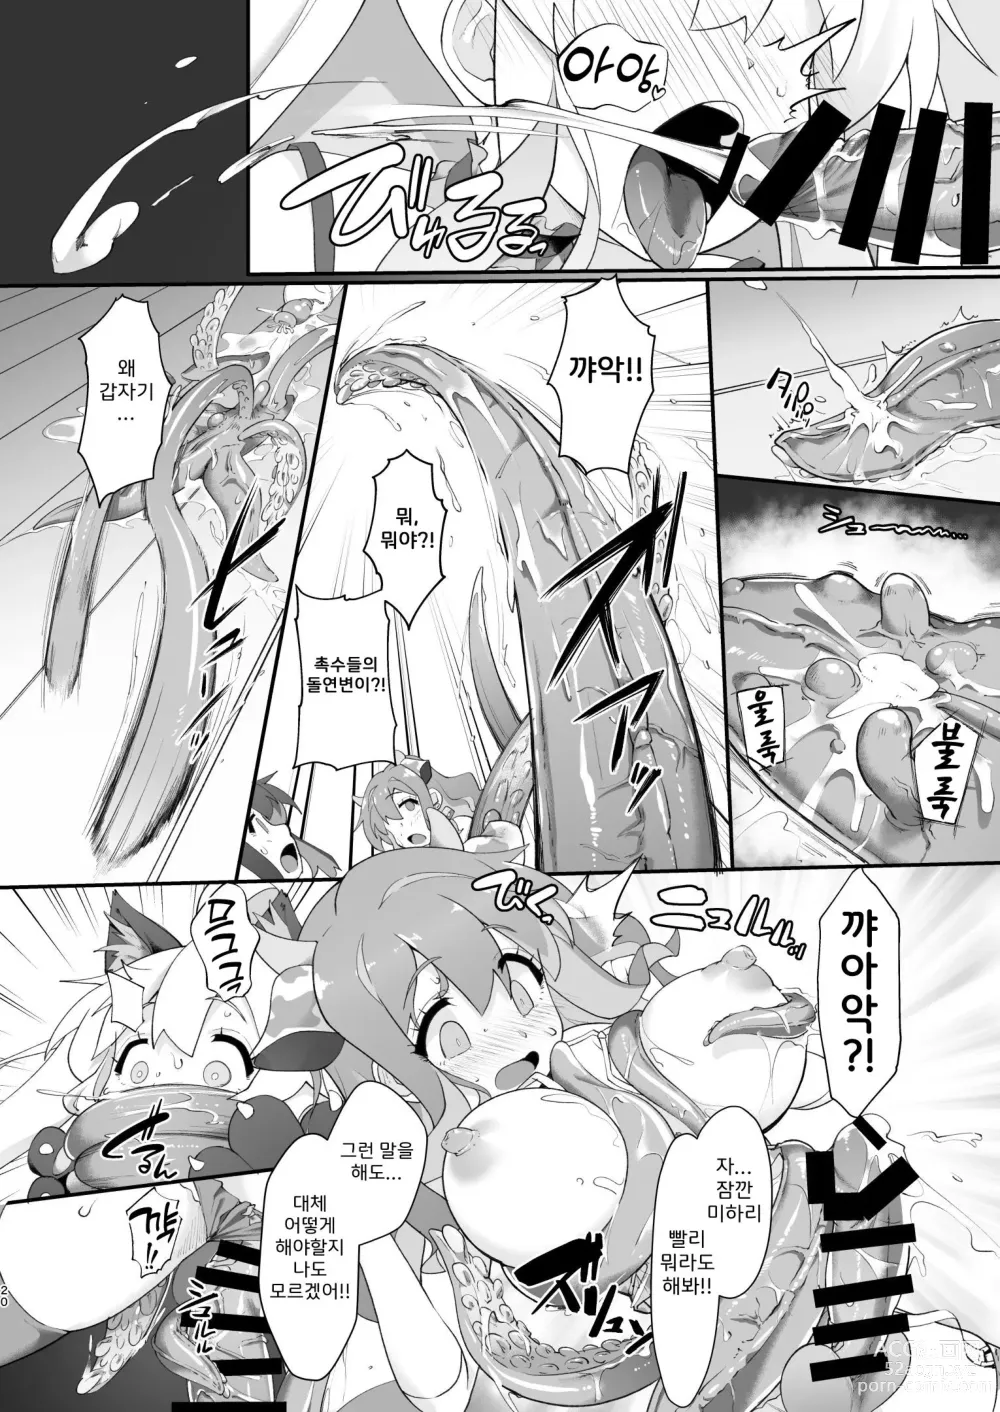 Page 20 of doujinshi 오빠가 못된 아가씨가 되어버려서 이것으로 참교육 하기로 했다